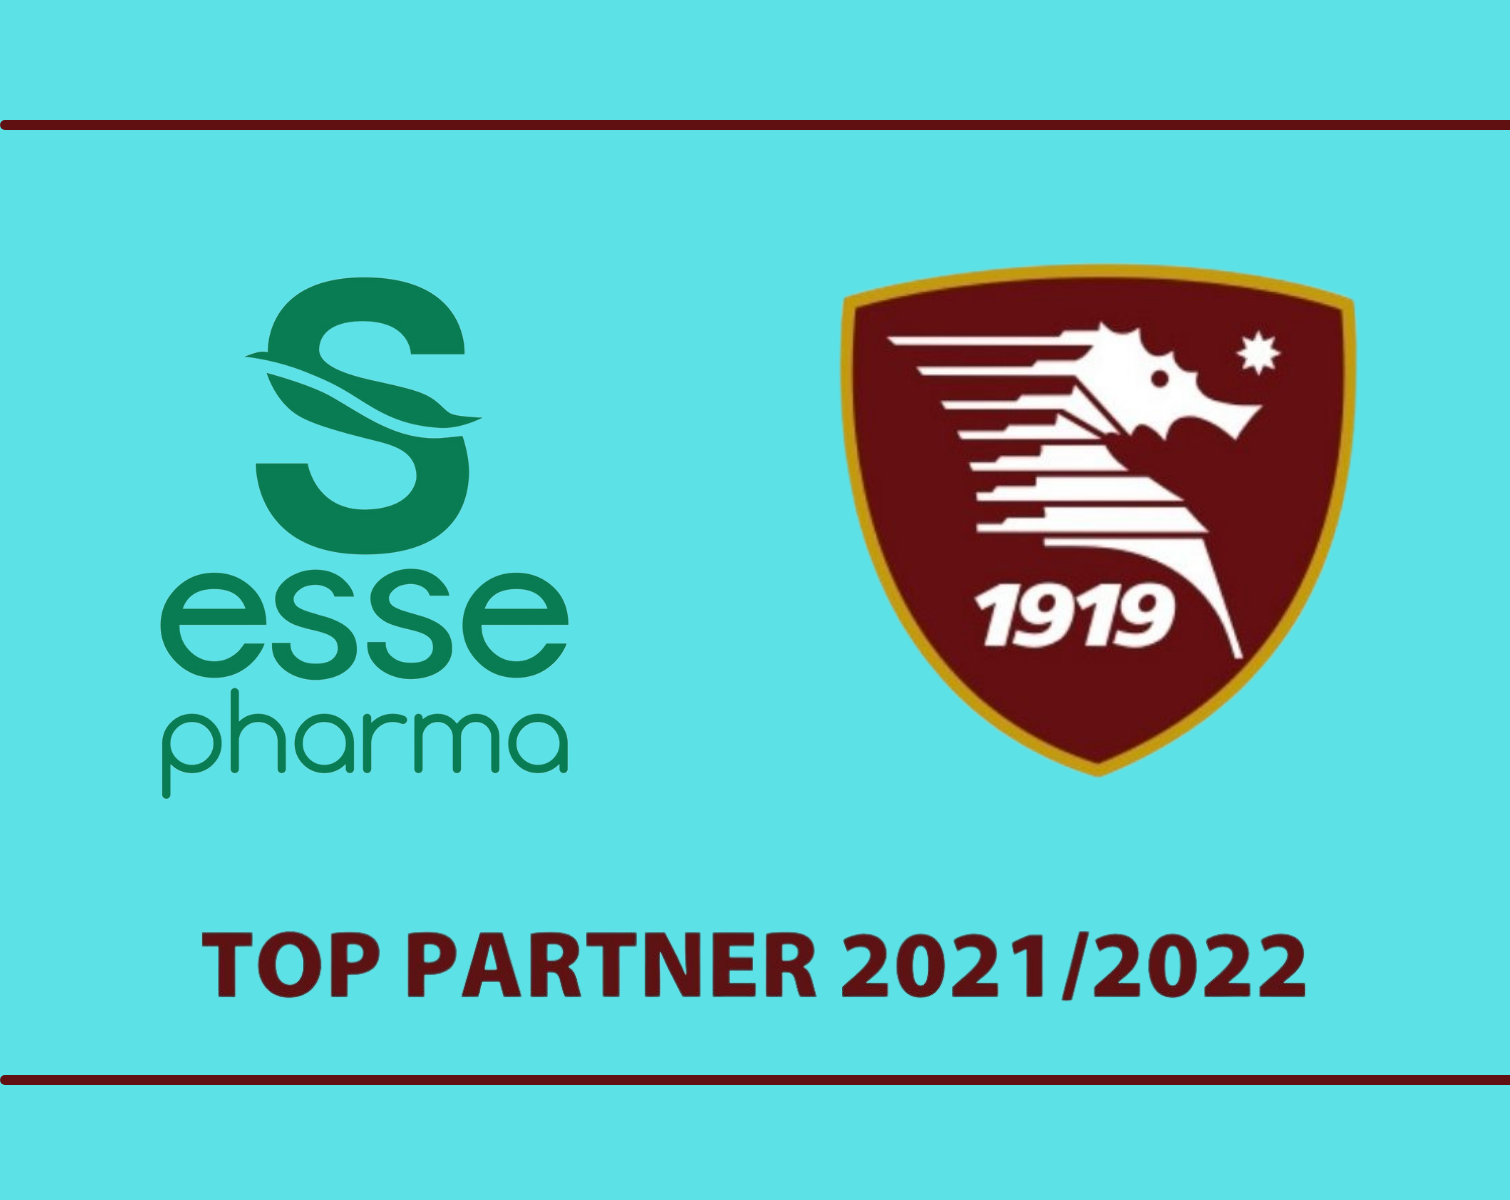 Essepharma è Top Partner della Salernitana per la stagione 2021/2022